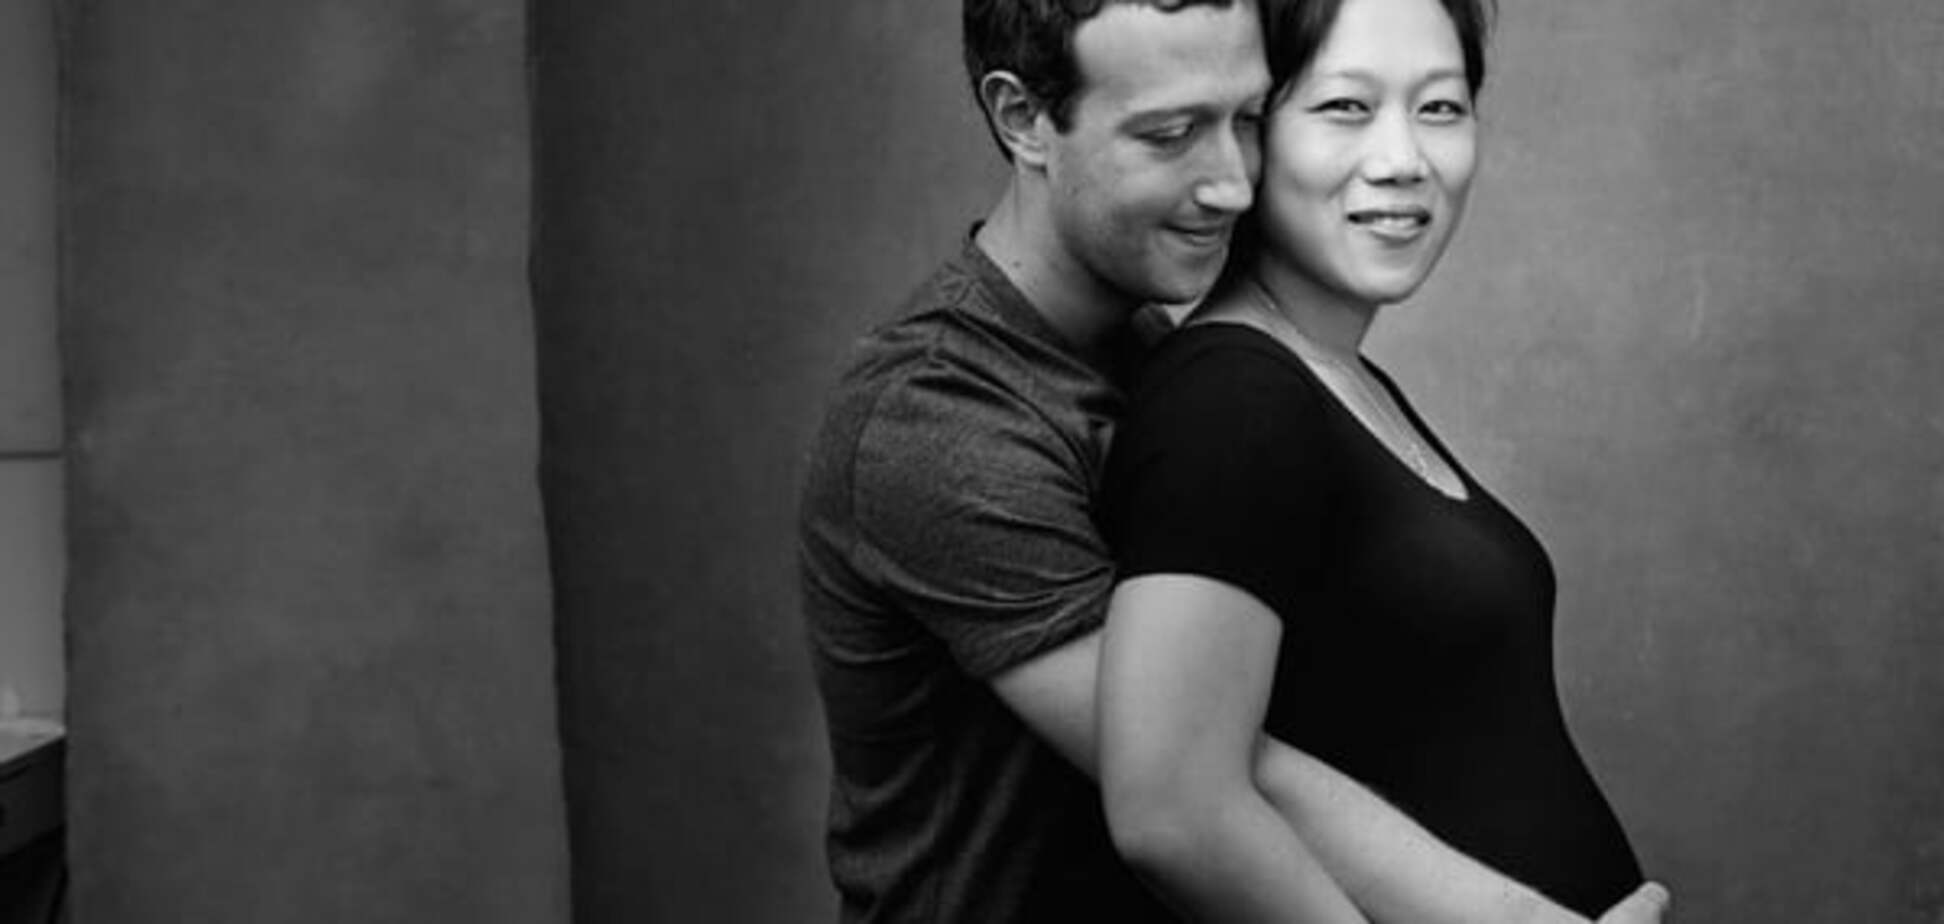 Цукерберг показал трогательное фото с беременной женой